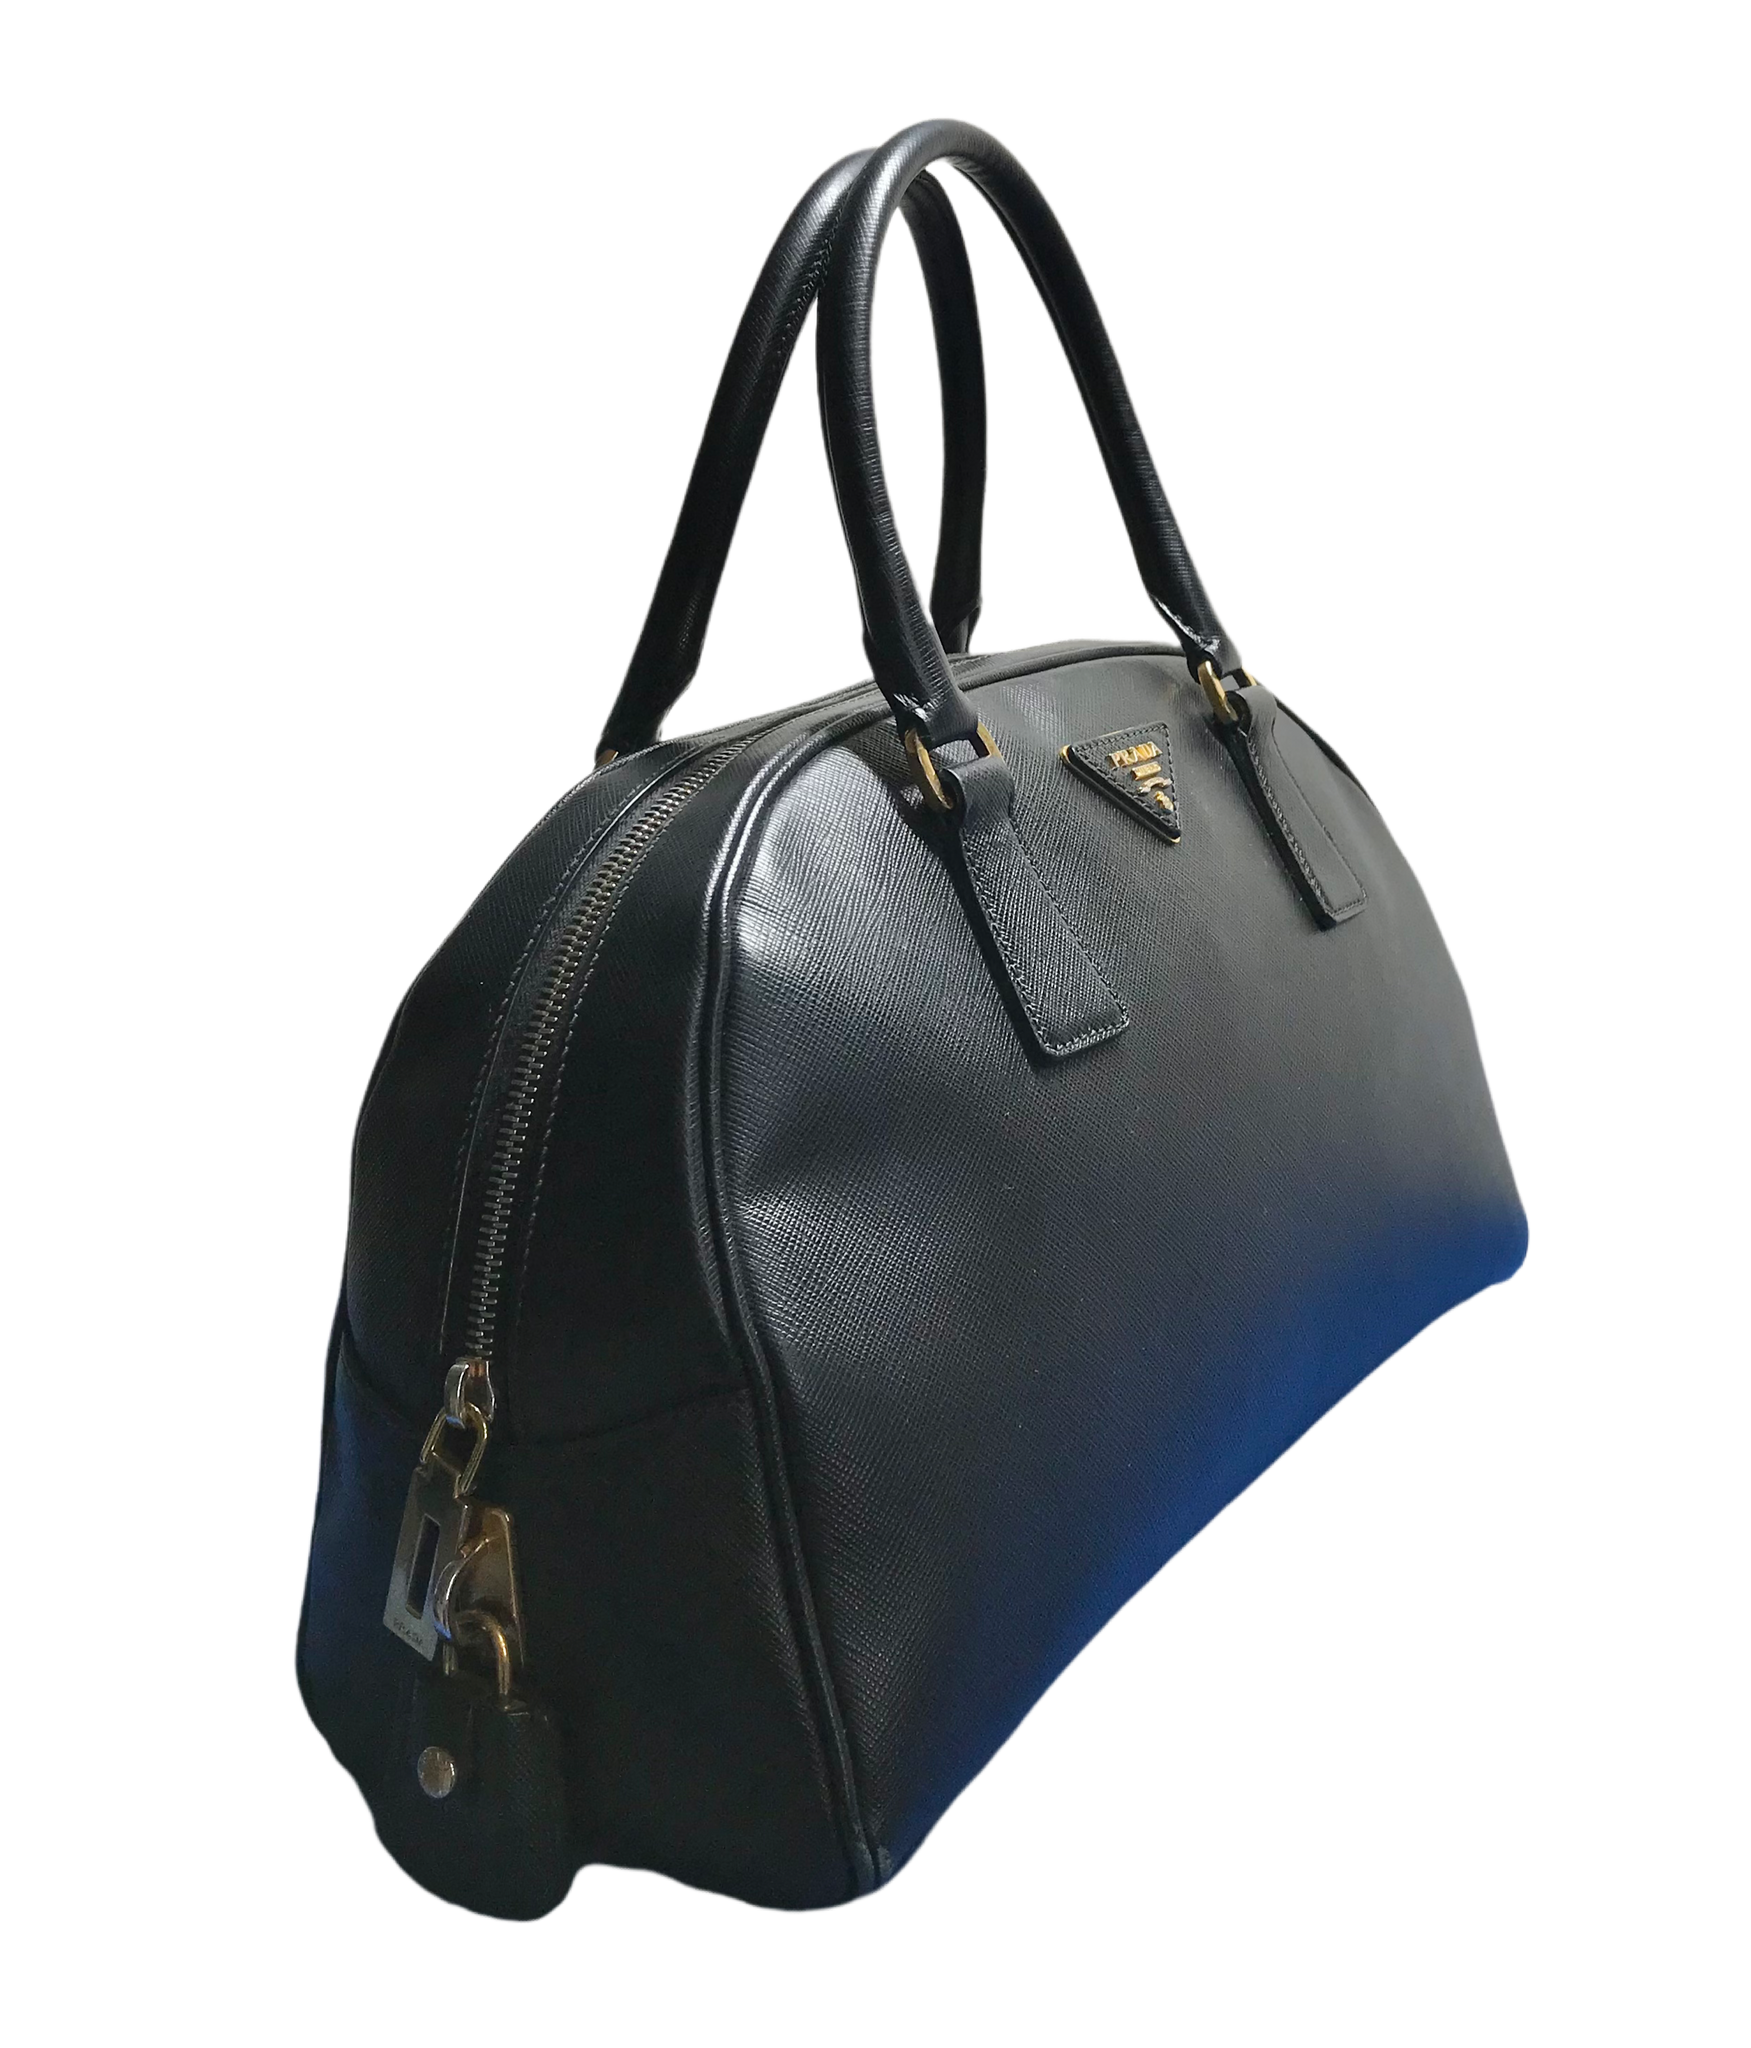 Prada Saffiano Lux Boston Bag in Black